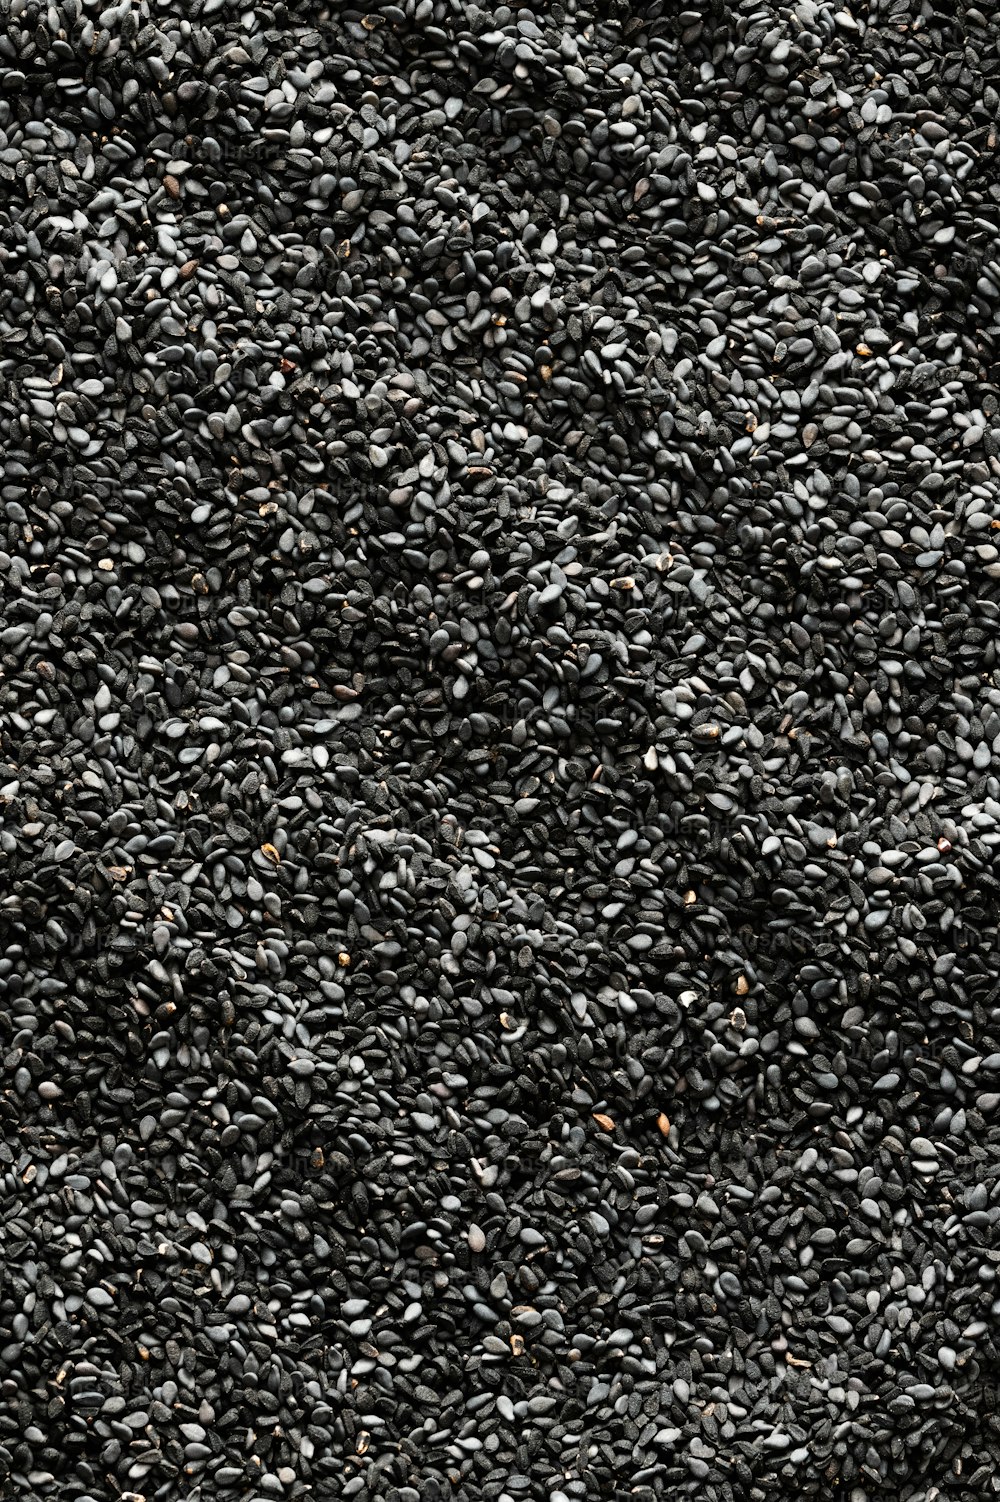 Ein Haufen schwarzer Sesamsamen auf einer weißen Oberfläche